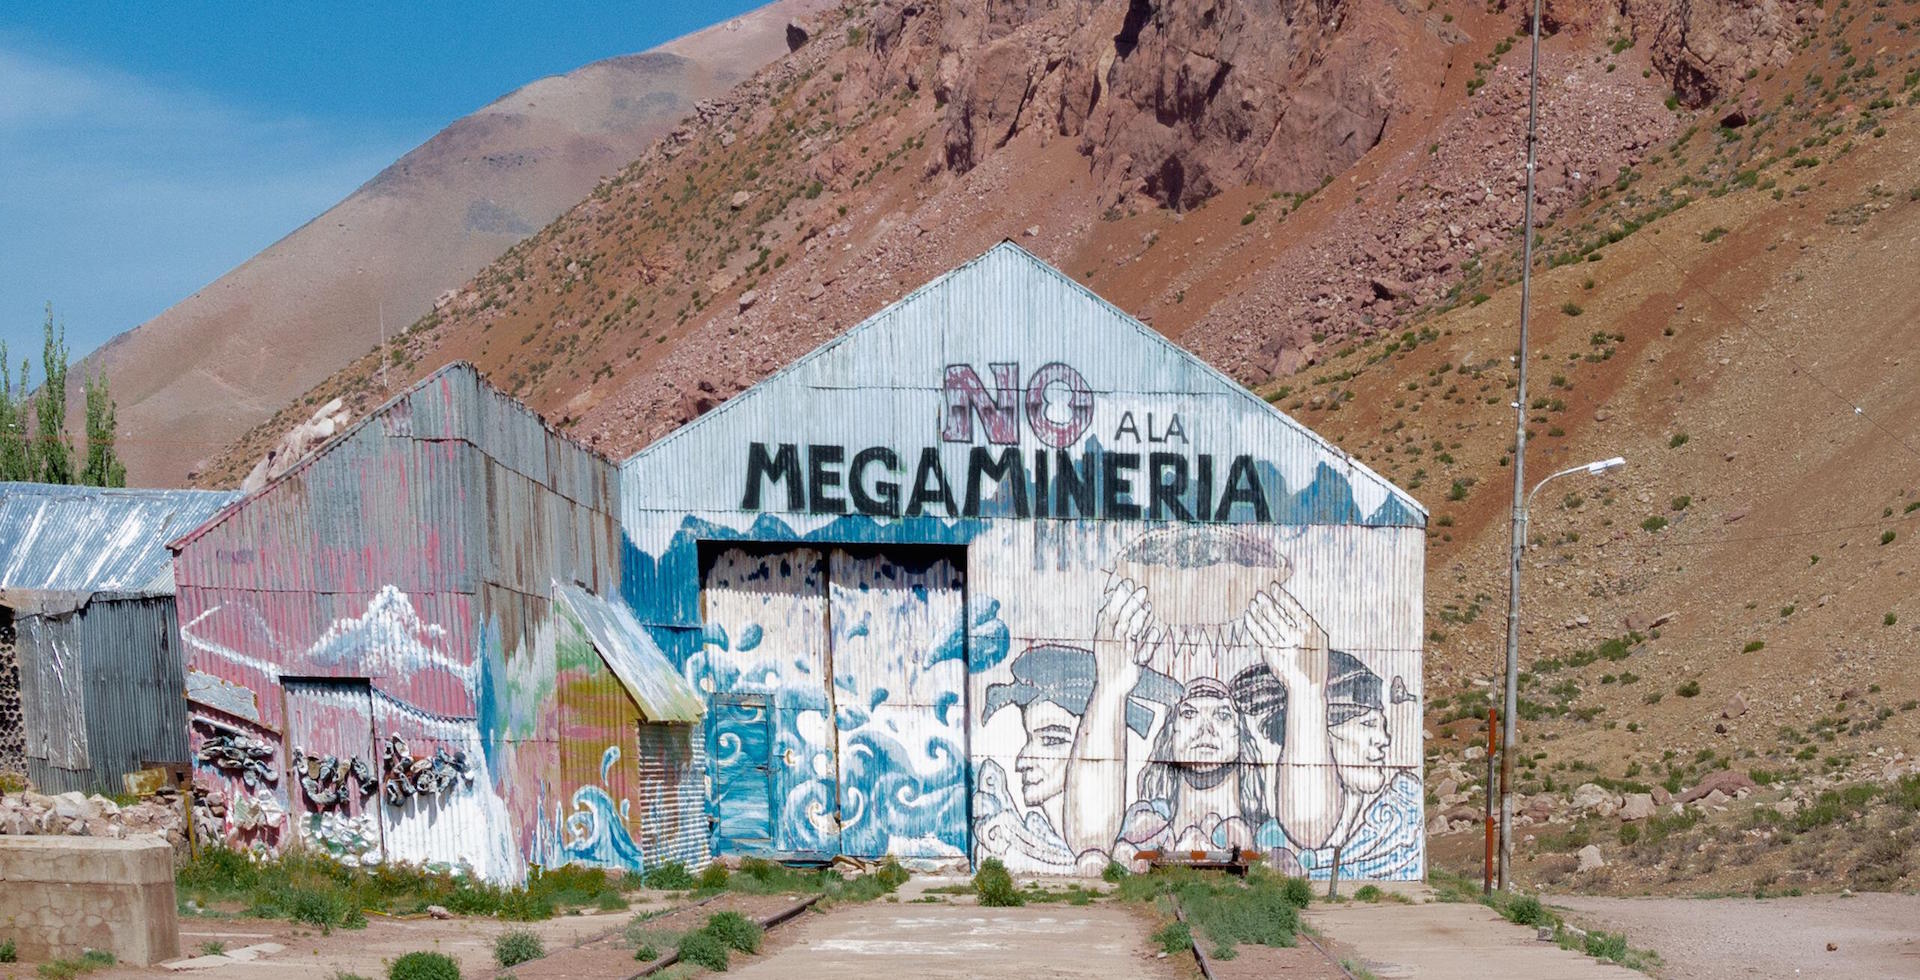 A mural against mining in Mendoza, Argentinaest Mendoza Argentina